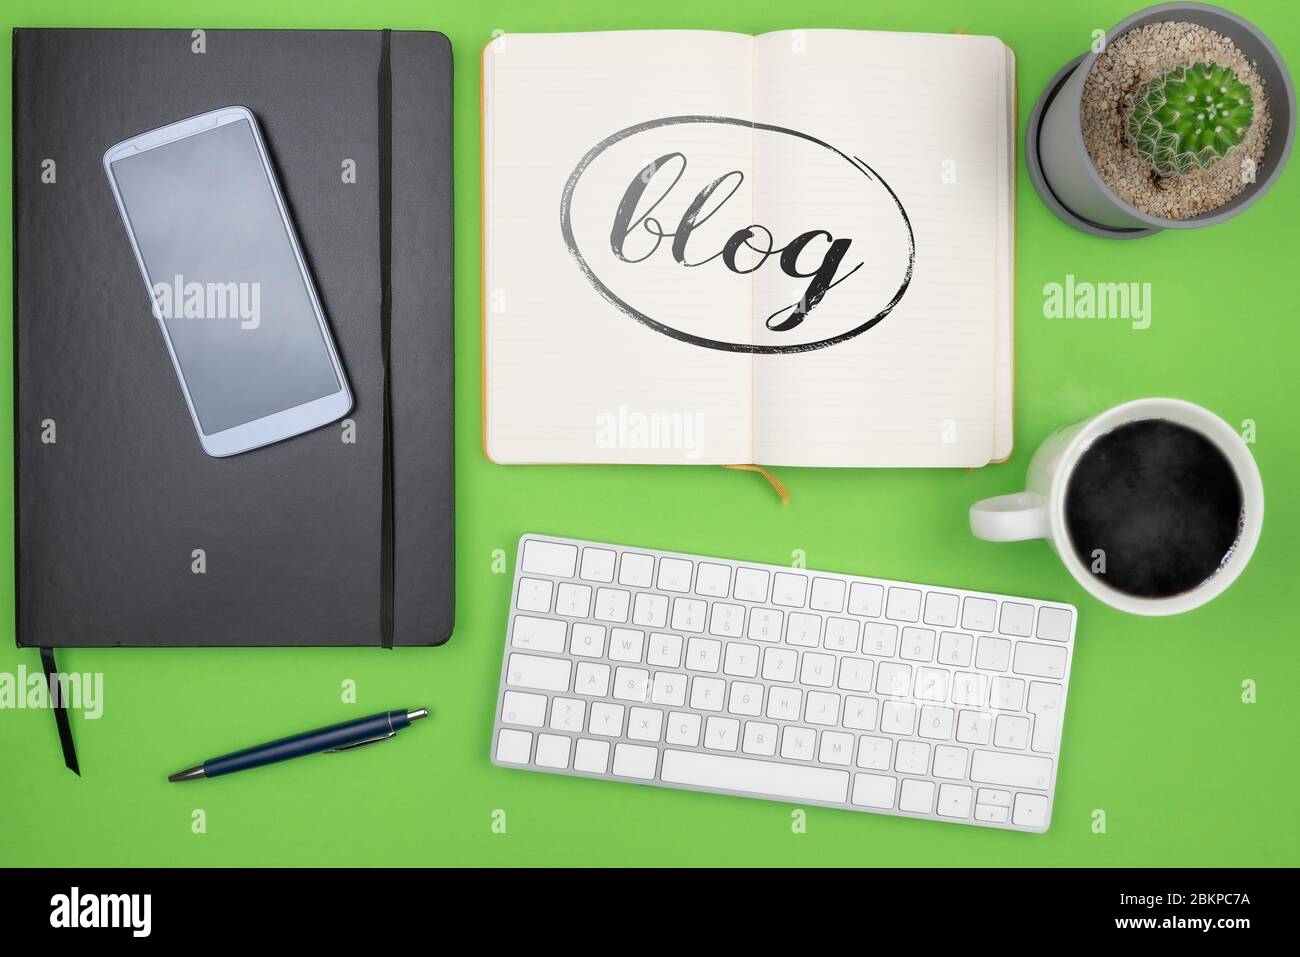 Blogging concetto, vista superiore di parola BLOG su nota pad sulla scrivania con tastiera del computer, tazza caffè e pianta in vaso Foto Stock